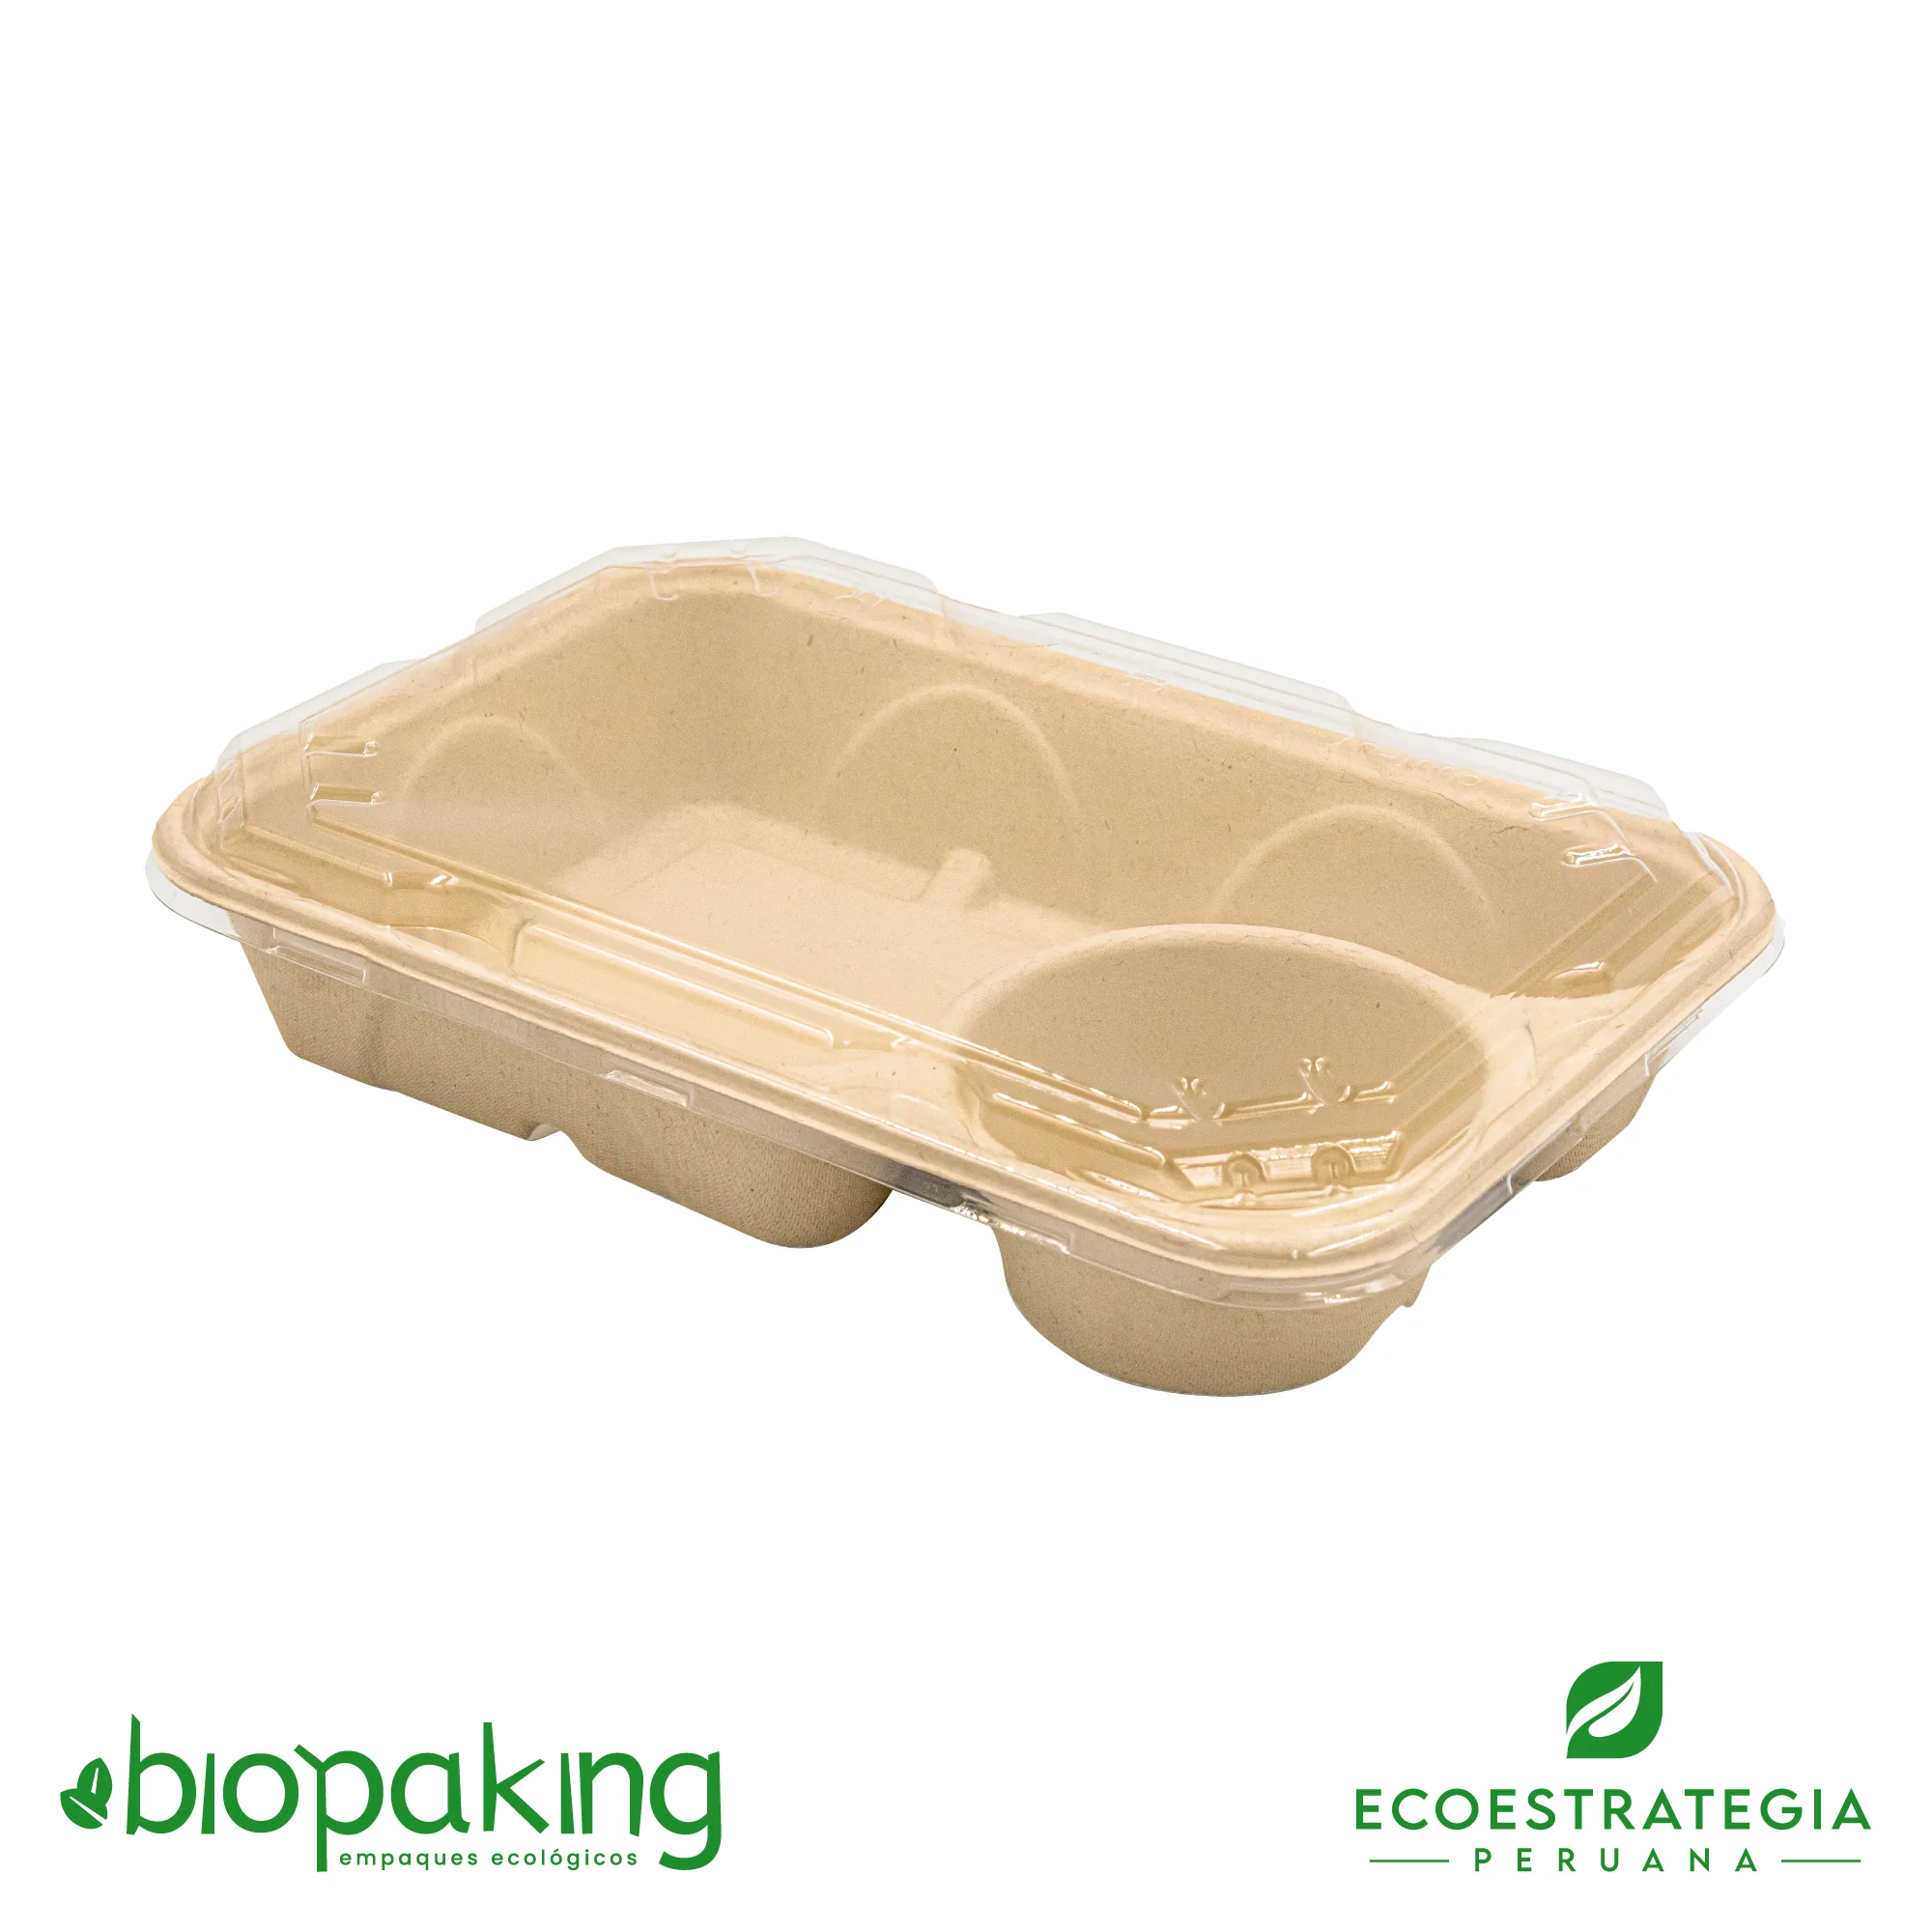 Esta bandeja biodegradable de 2 divisiones es a base de fibra de trigo. Envases descartables con gramaje ideal, cotiza tus empaques, platos y tapers ecológicos